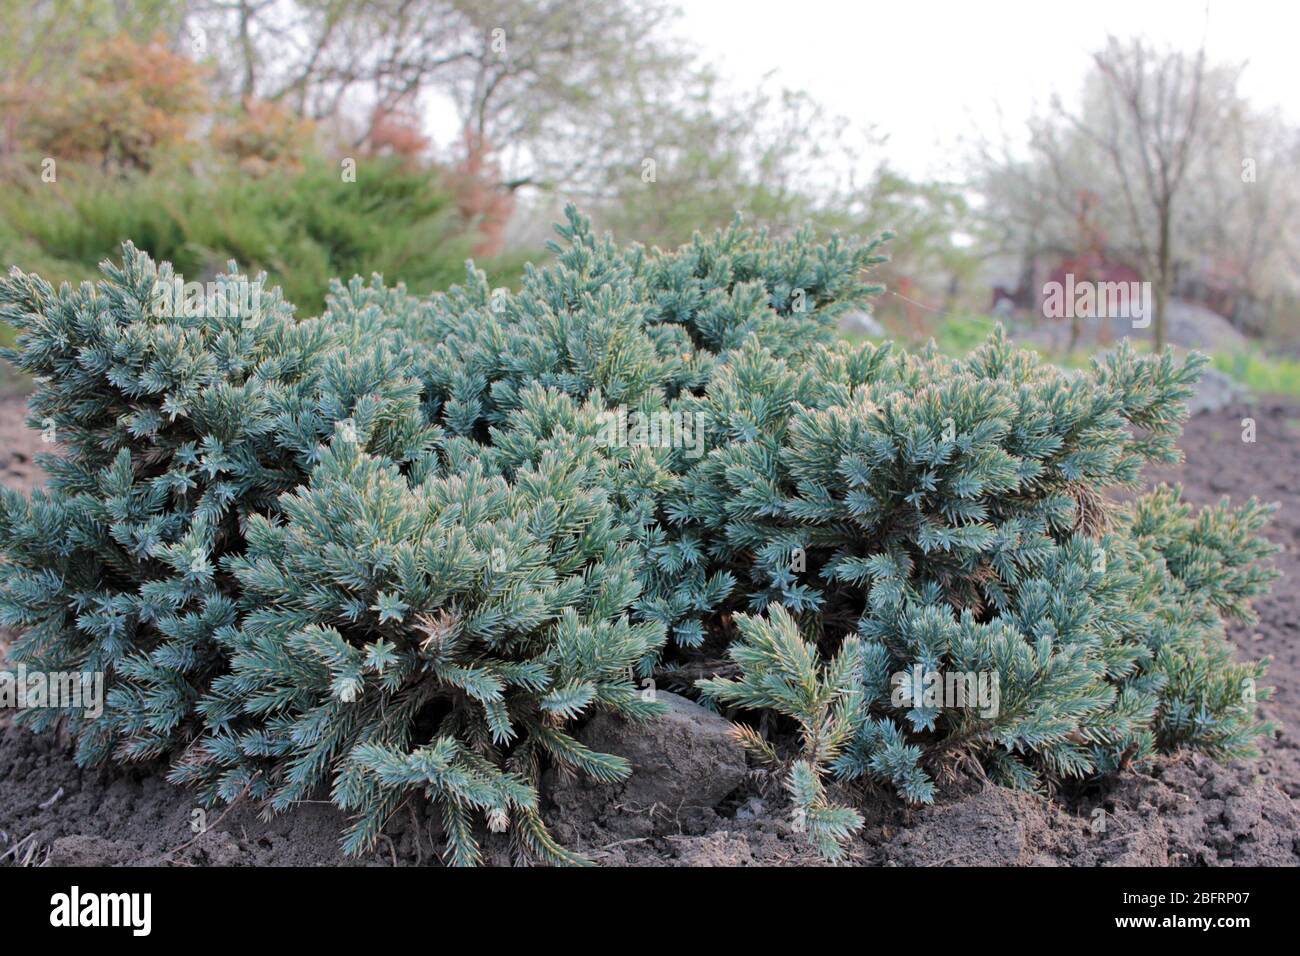 Blue Star Juniper pianta anche conosciuta come Himalayan juniper. Arbusto sempreverde agugliato con fogliame argenteo-blu, densamente imballato nel giardino. Foto Stock